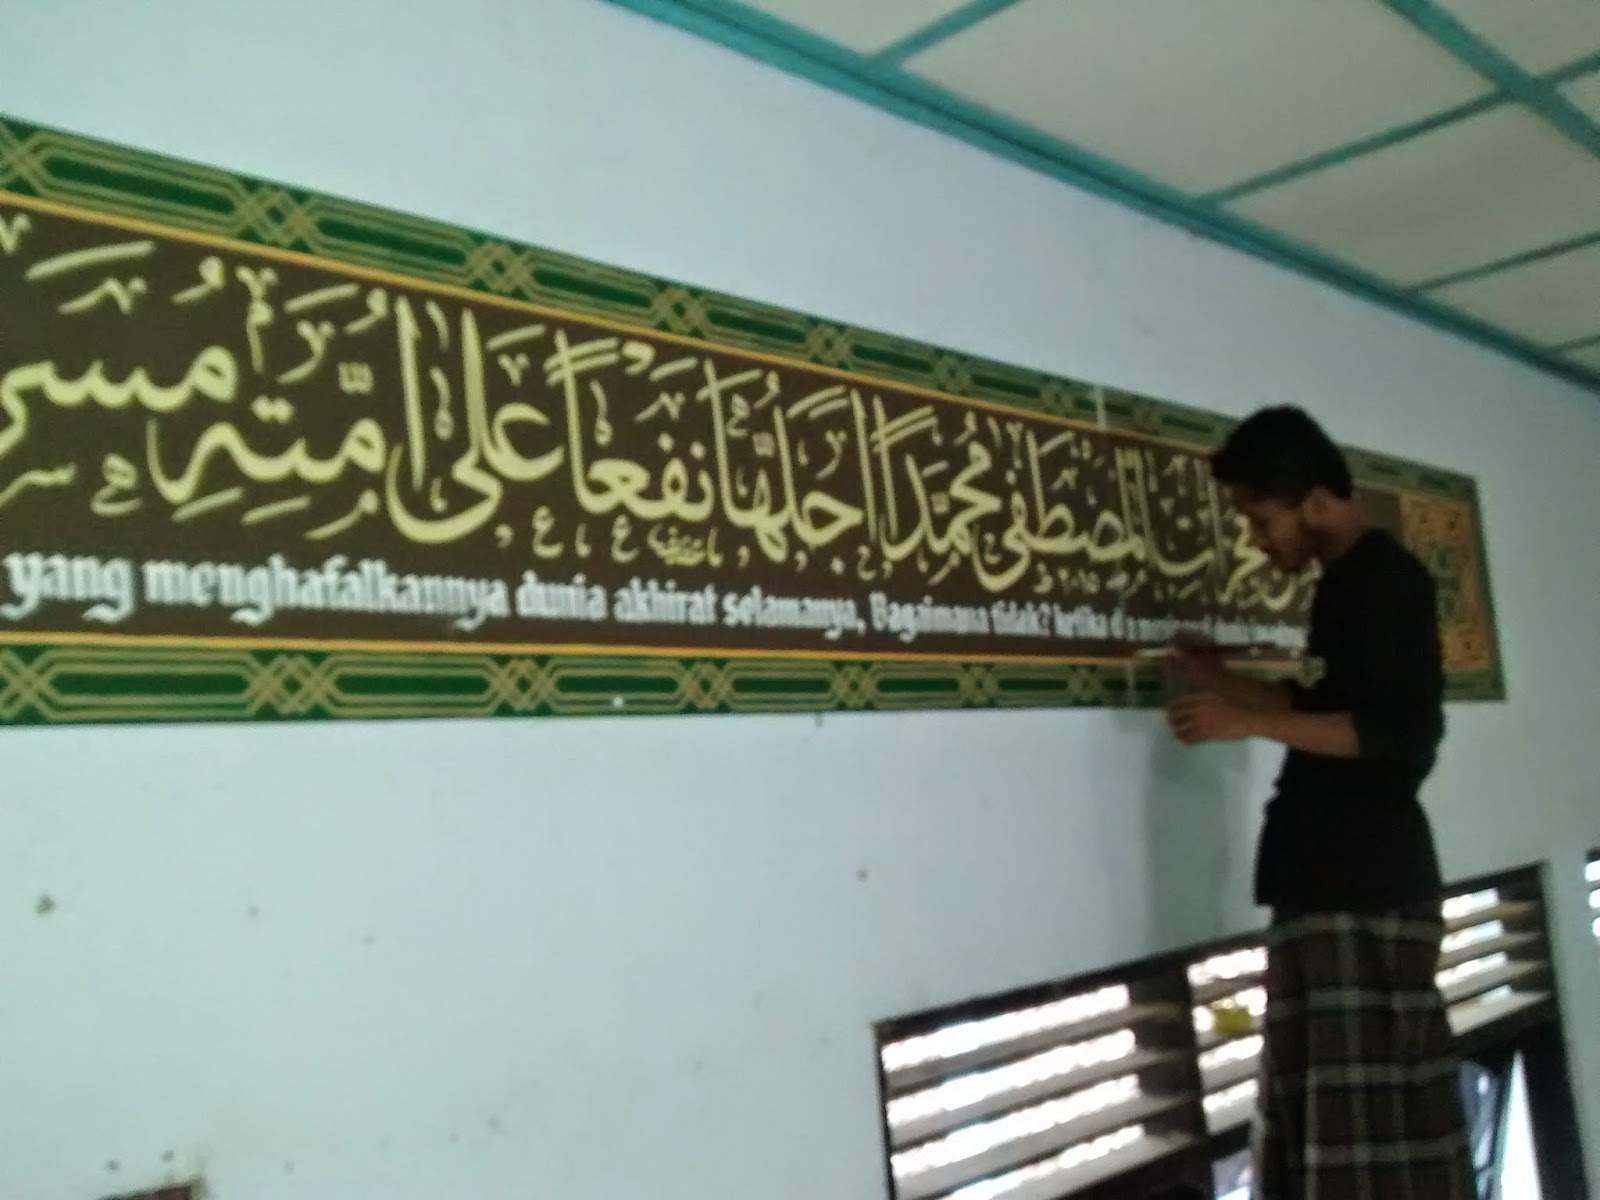 Kaligrafi Dinding "quranuna" Aula 3 Pondok Pesantren An Nur Ngrukem